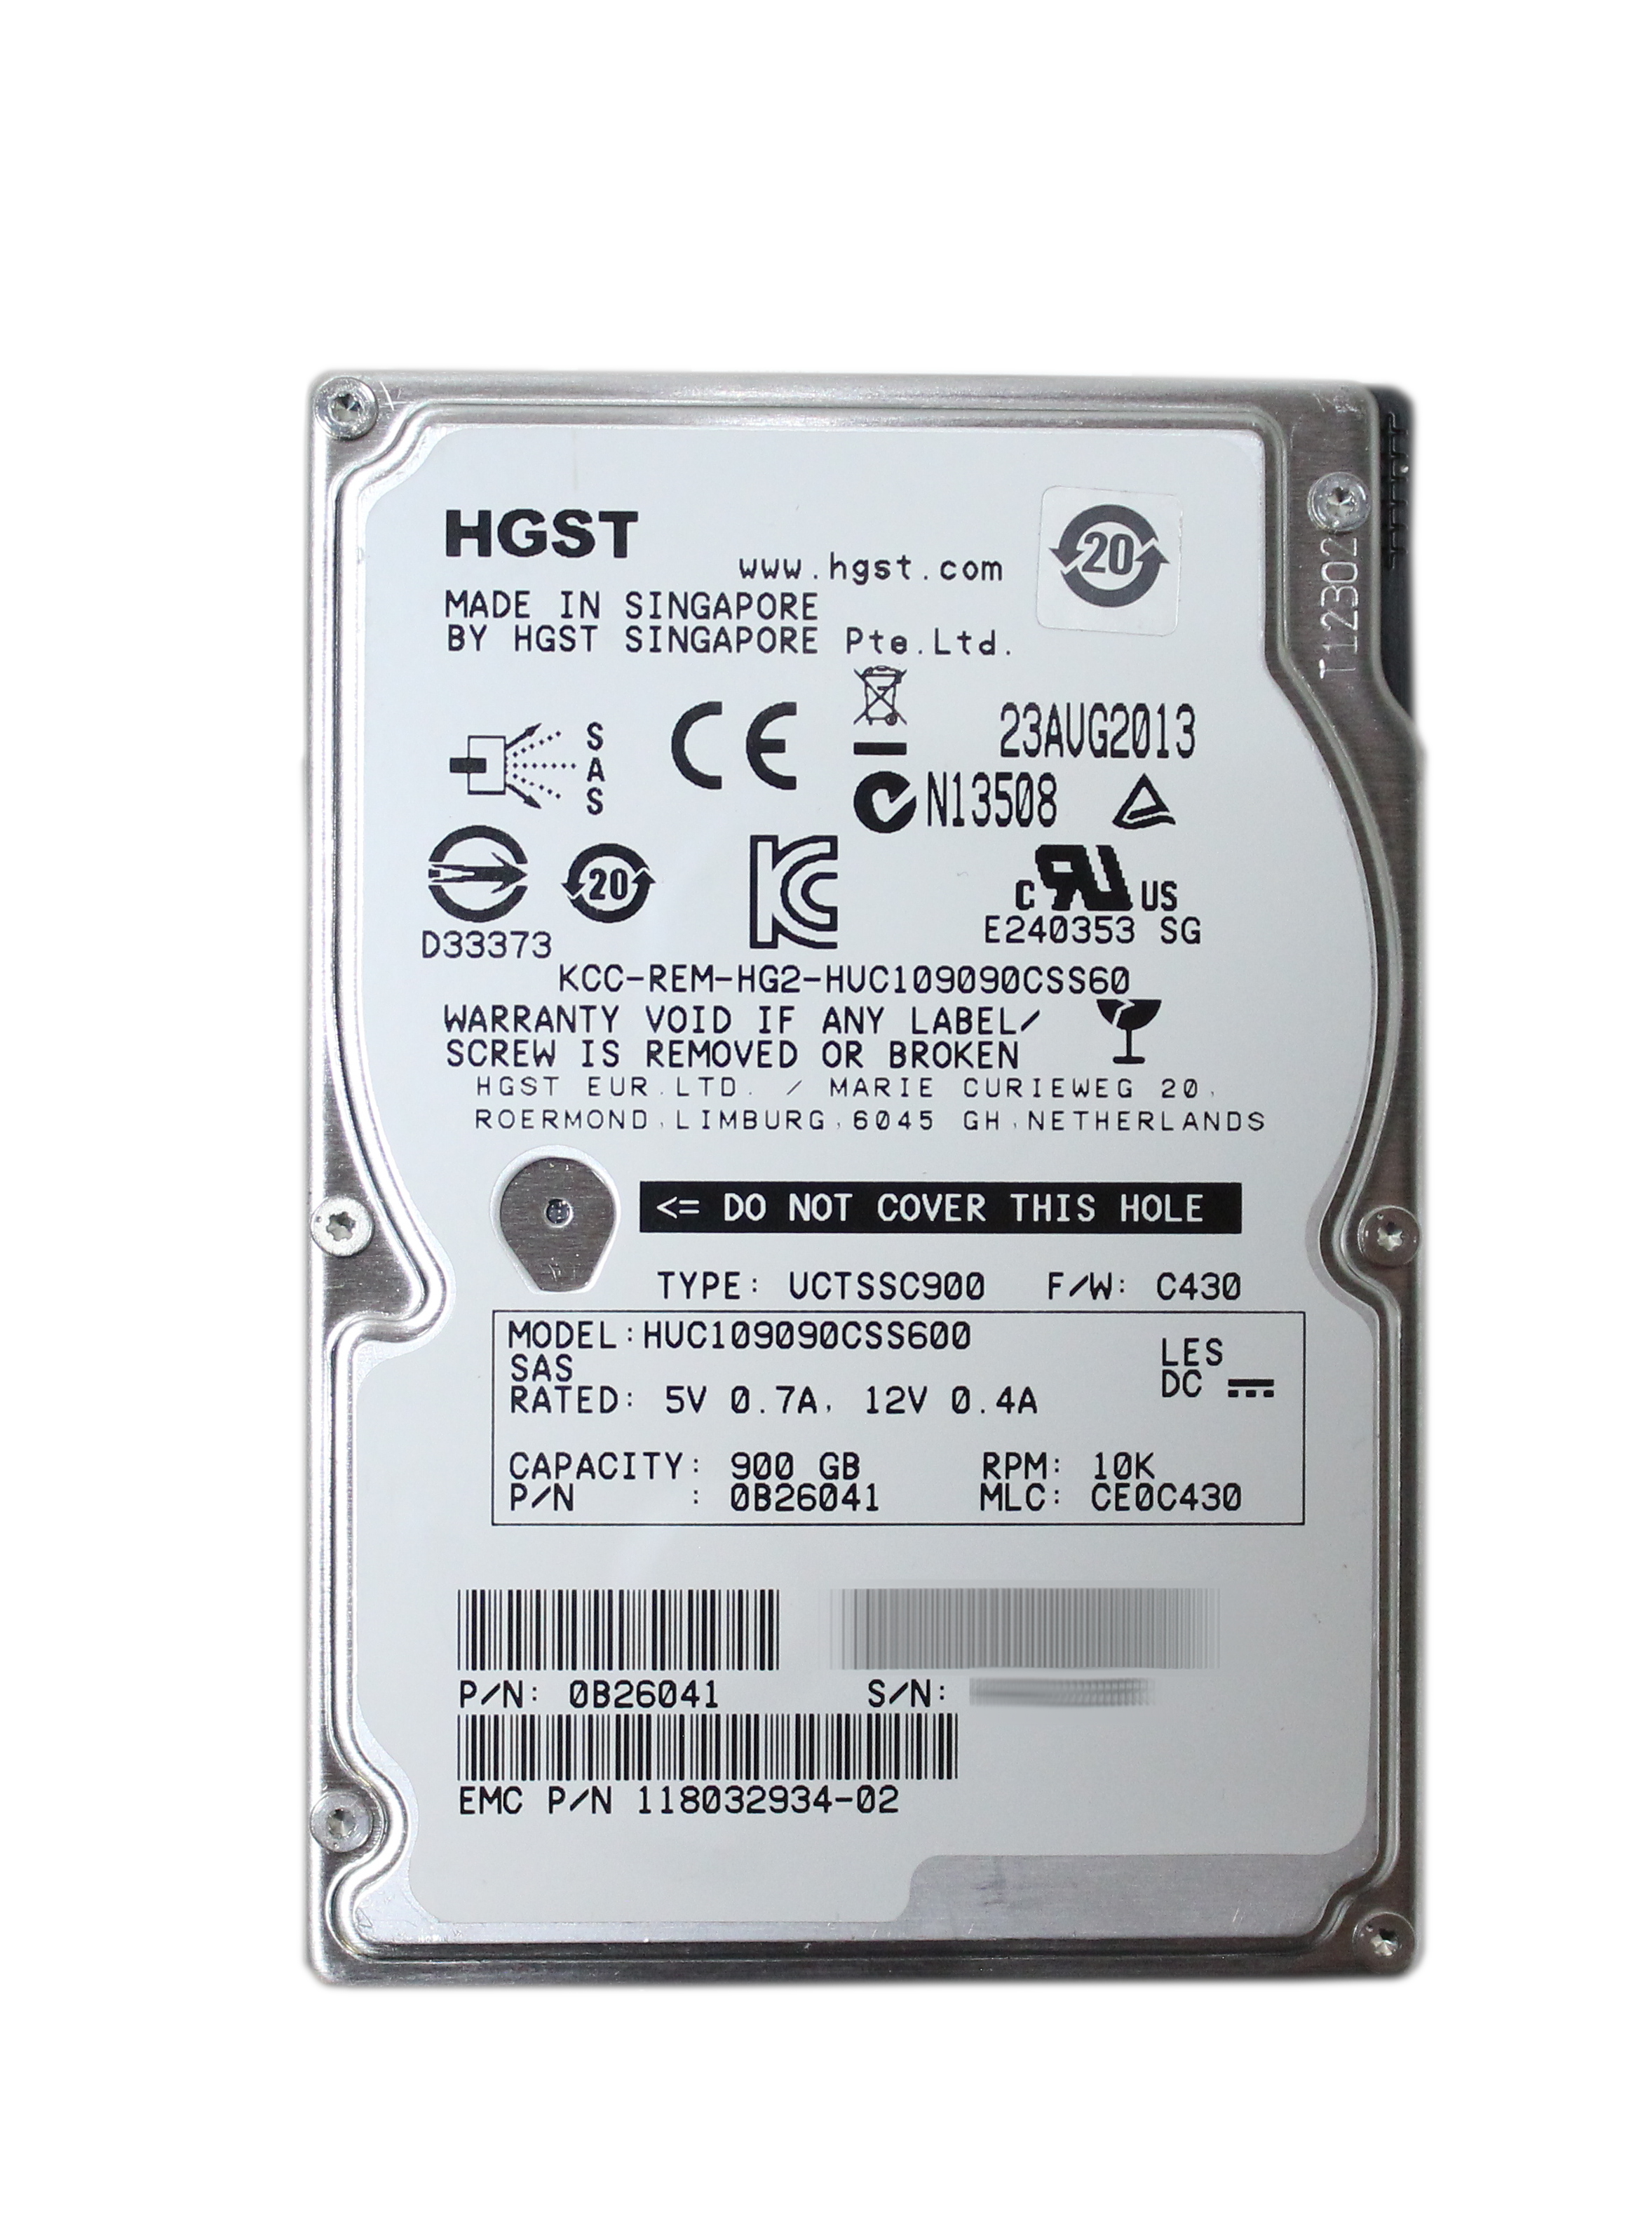 HGST 900GB HUC109090CSS600 RPM 10K 2.5" SAS EMC 0B26041 118032934-02 V6-2S10-900-DUP